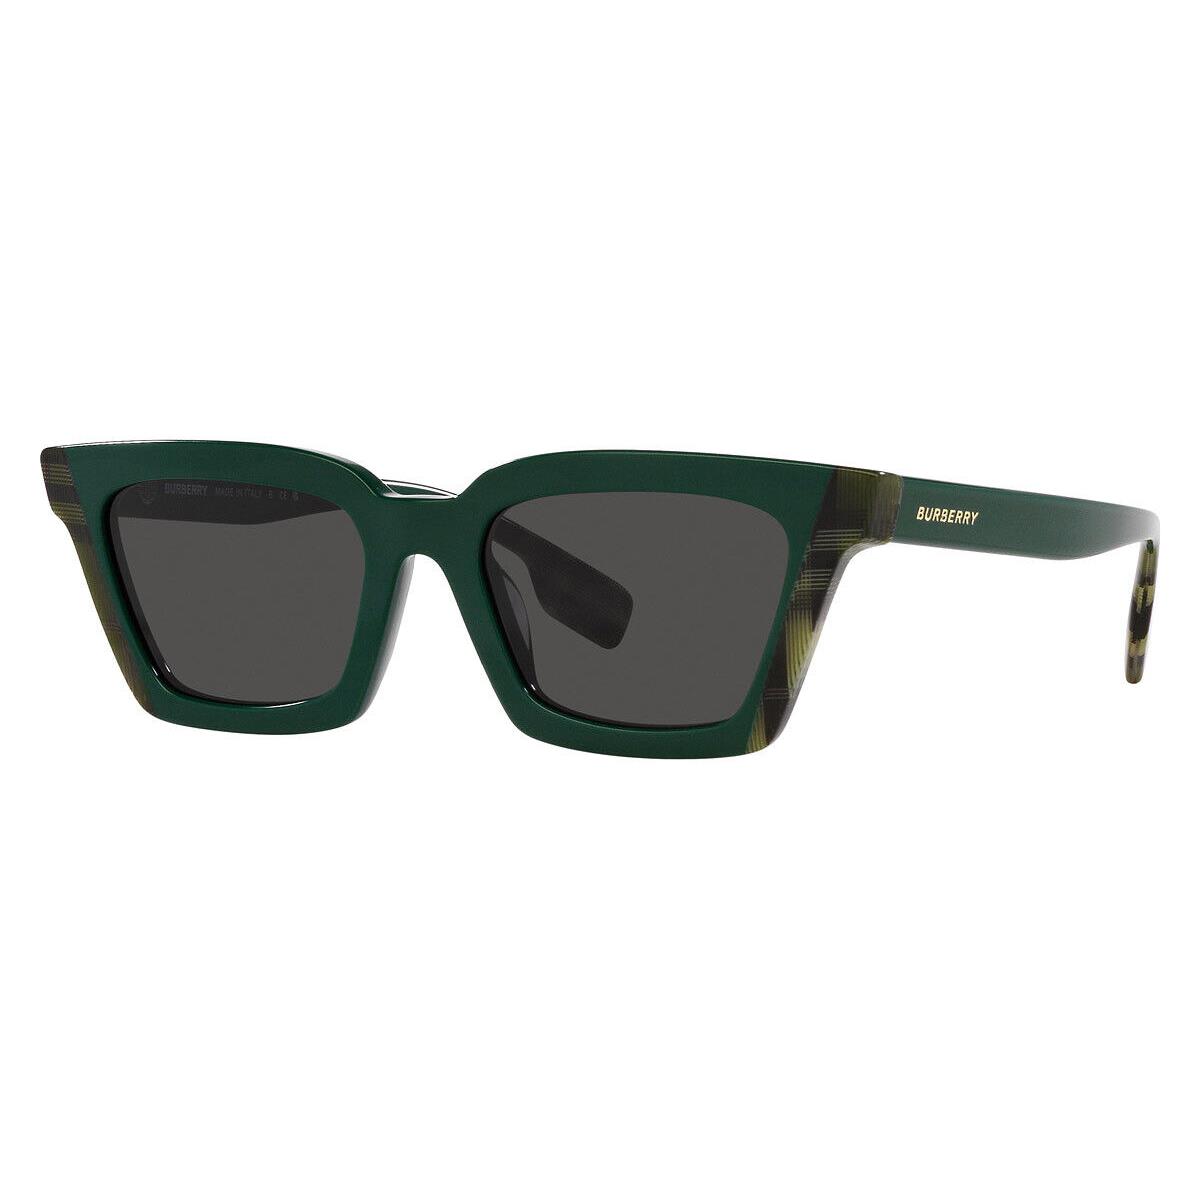 Burberry Briar BE4392U Sunglasses Green/check Green Dark Gray 52mm - Frame: Green/Check Green / Dark Gray, Lens: Dark Gray